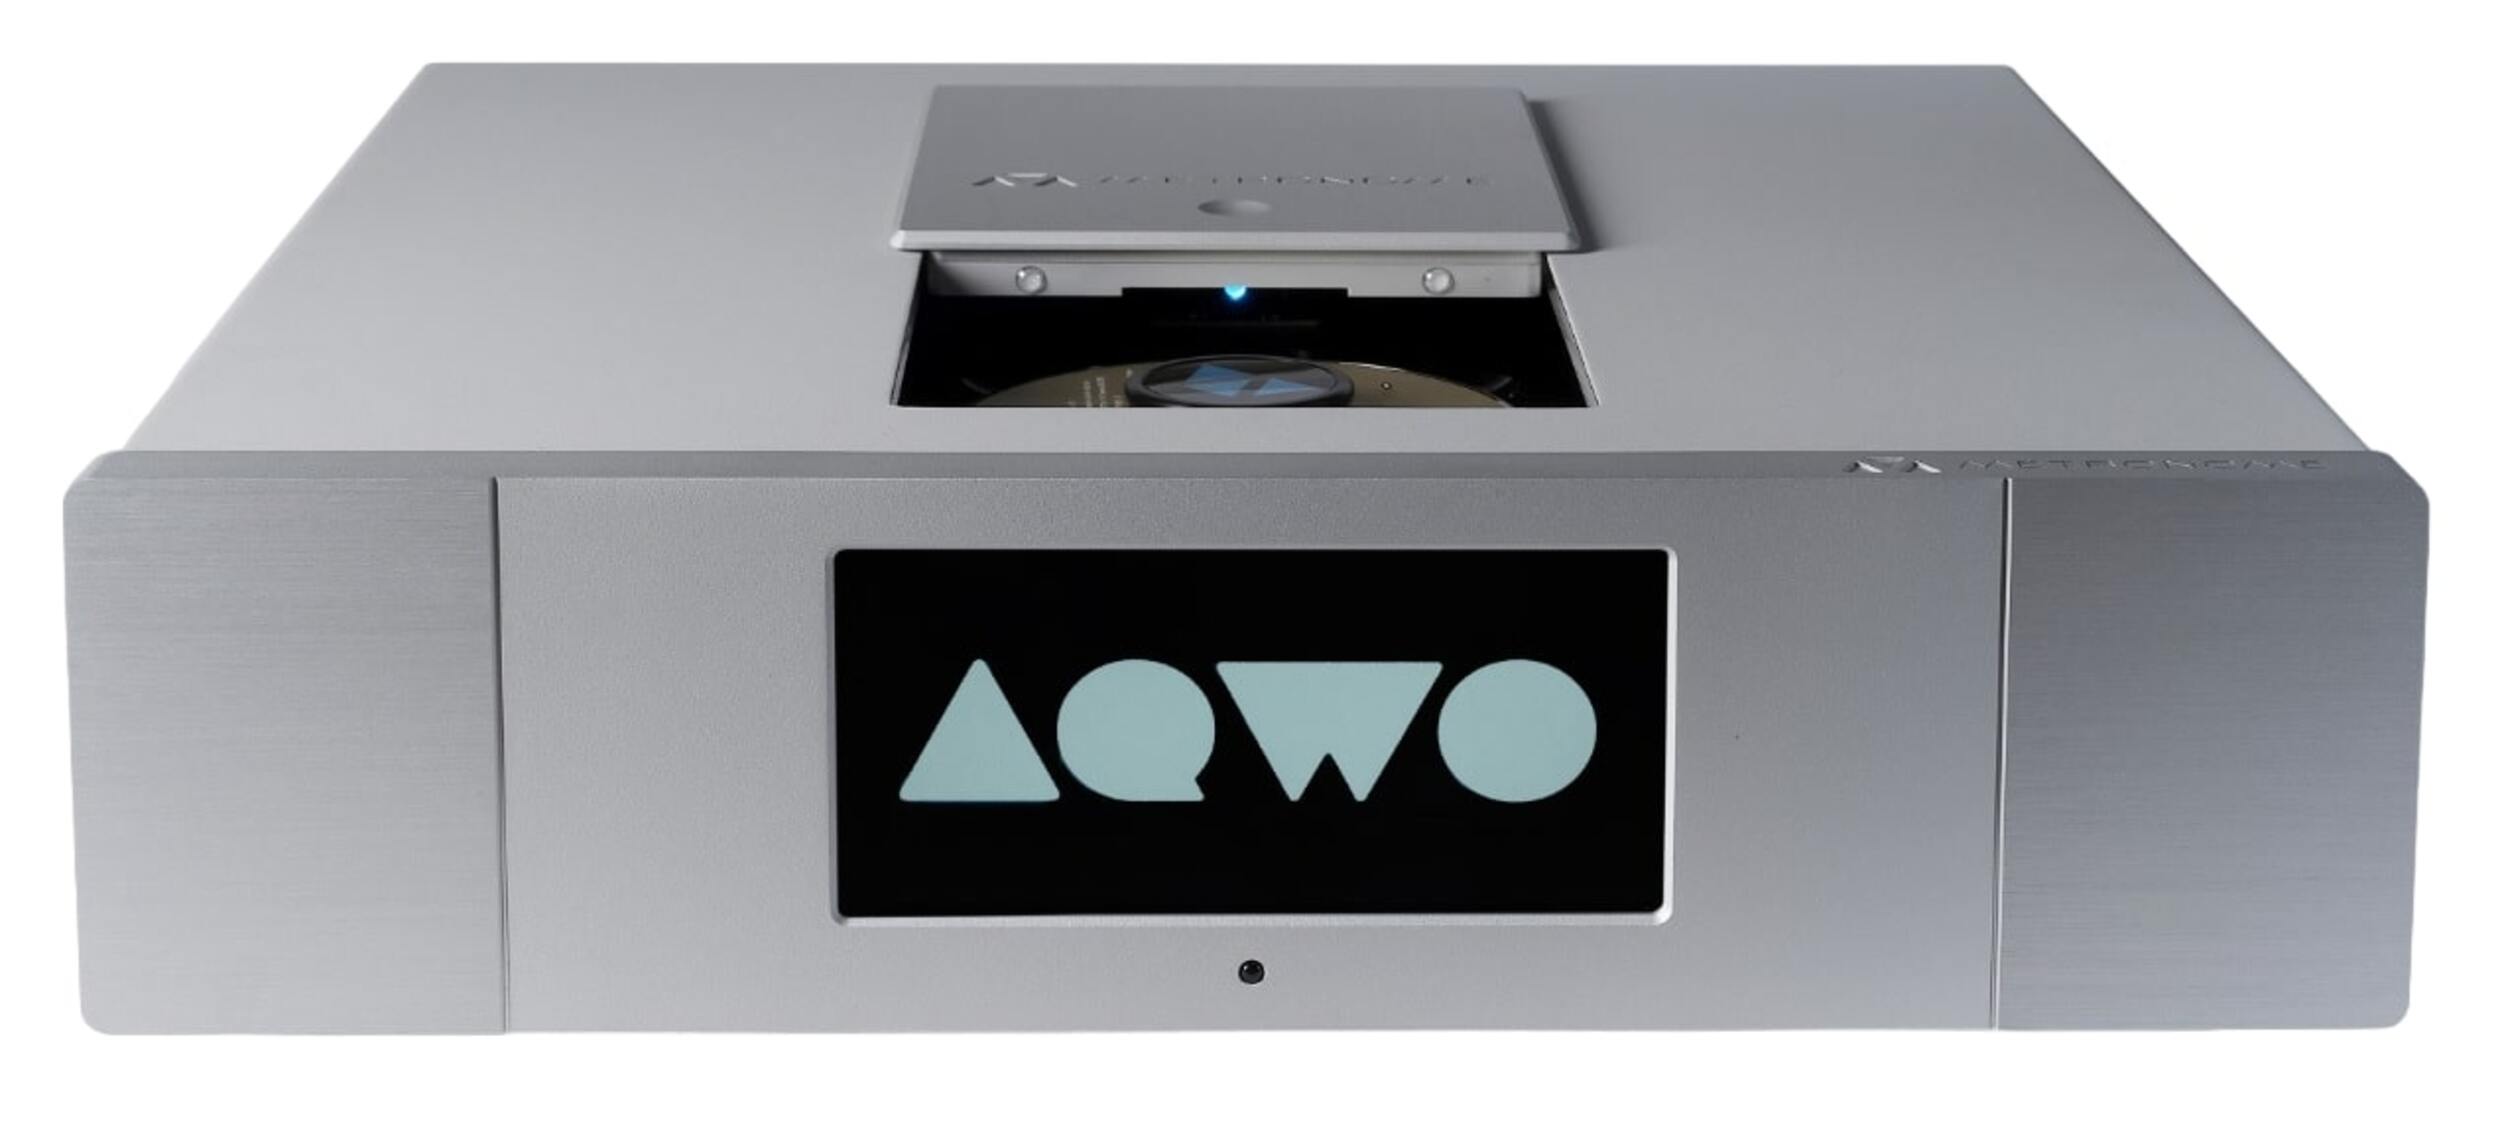 CD проигрыватели Metronome AQWO 2 Silver cd проигрыватели t a pdt 3100 hv silver sacd cd